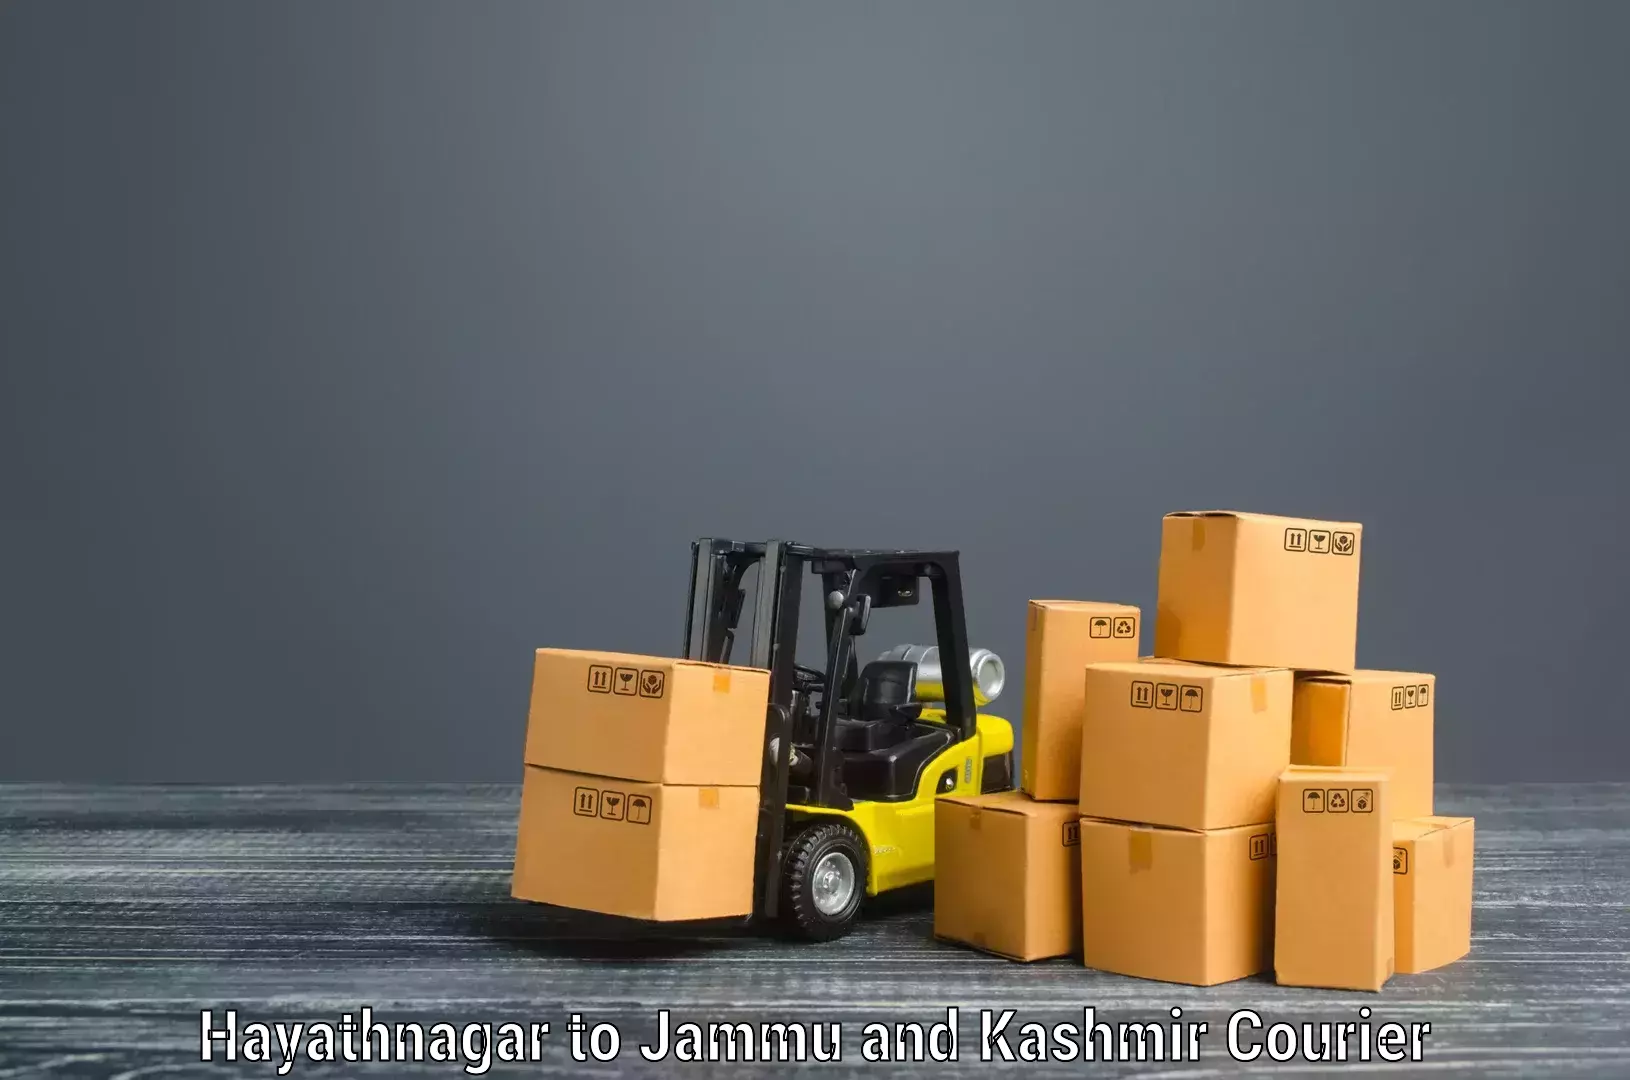 Furniture transport services in Hayathnagar to Ramban